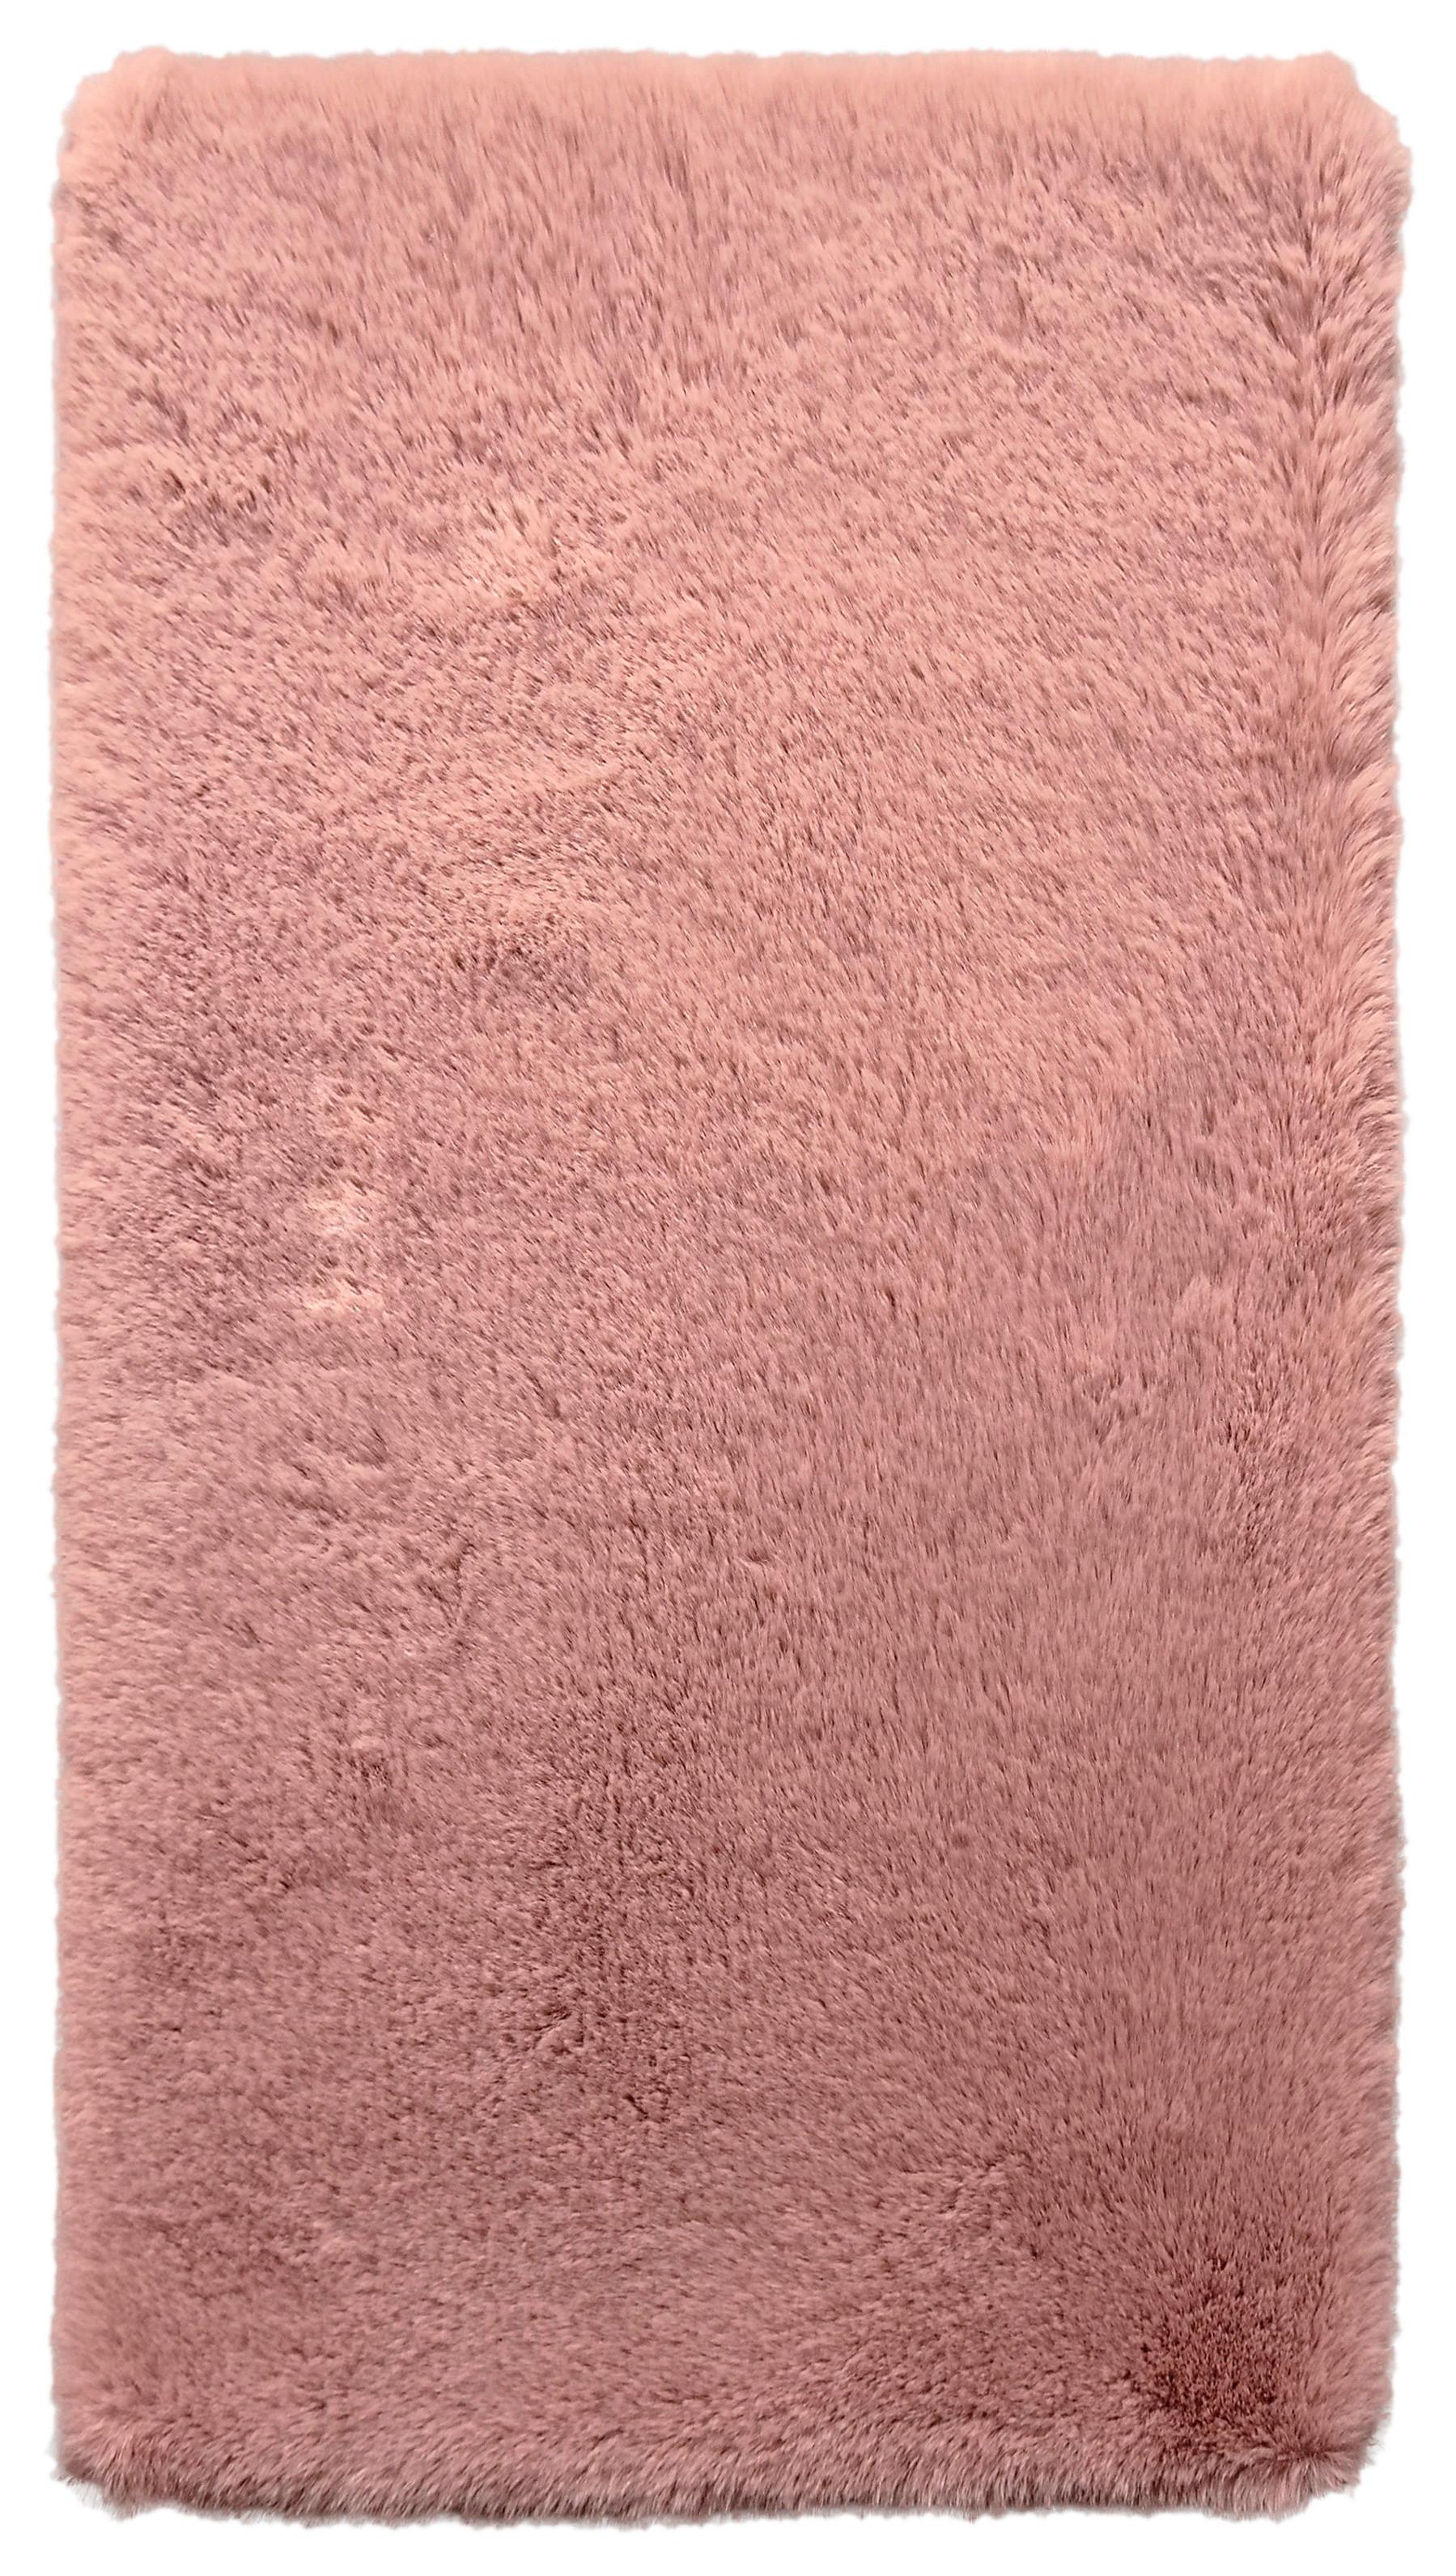 Umelá Kožušina Caroline 1, 80/150cm, Ružová - staroružová, textil (80/150cm) - Modern Living